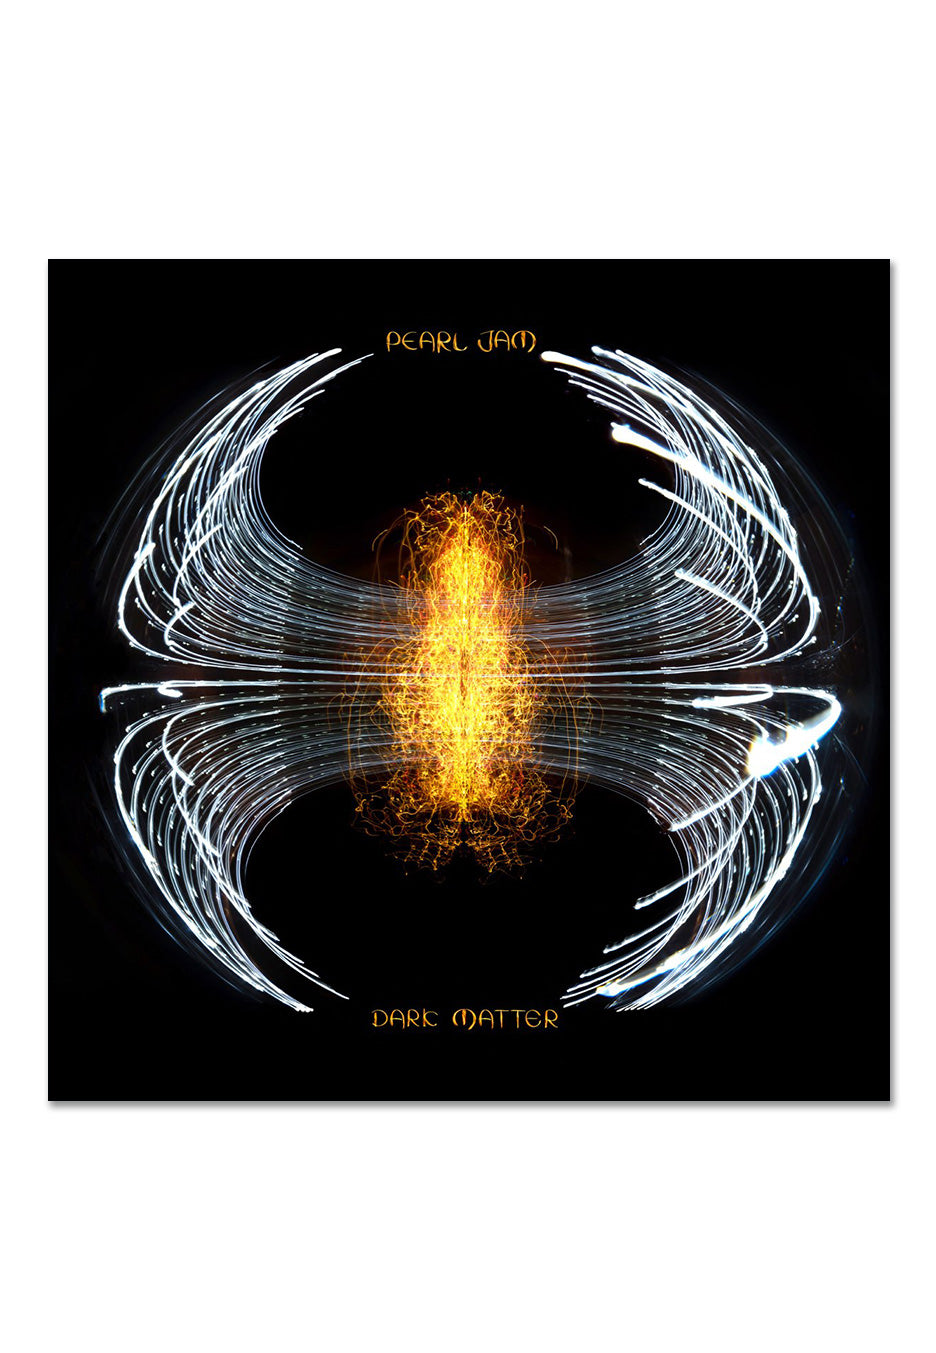 Pearl Jam - Dark Matter - Digipak CD